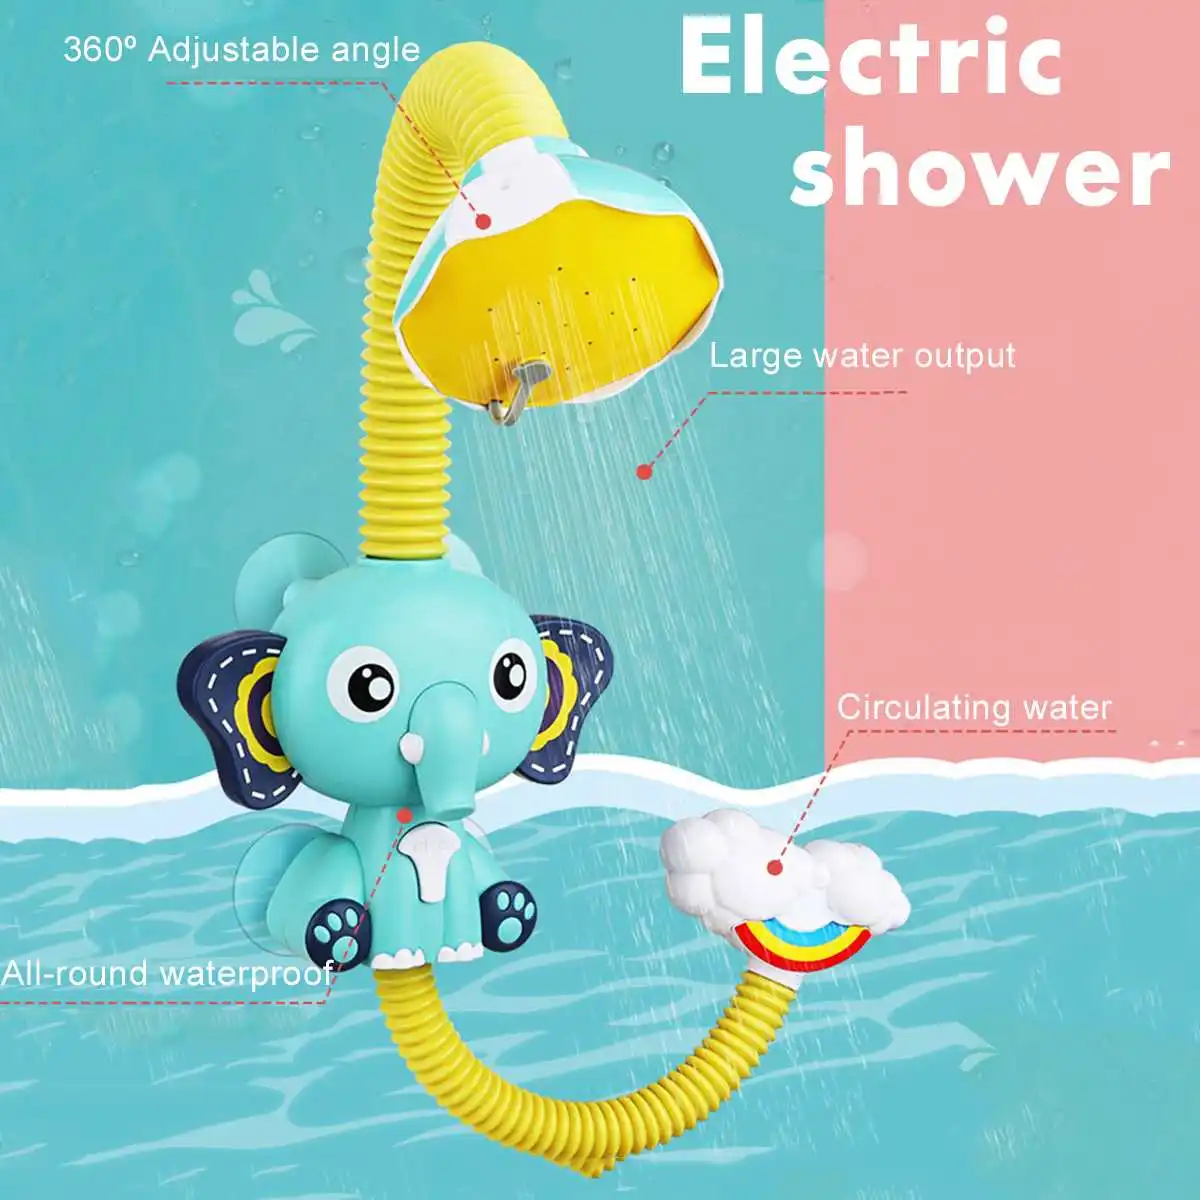 

Детская игрушка для Ванной Электрический мультяшный душ слон распылитель воды игрушки смеситель ванная комната Развивающая игра для детей